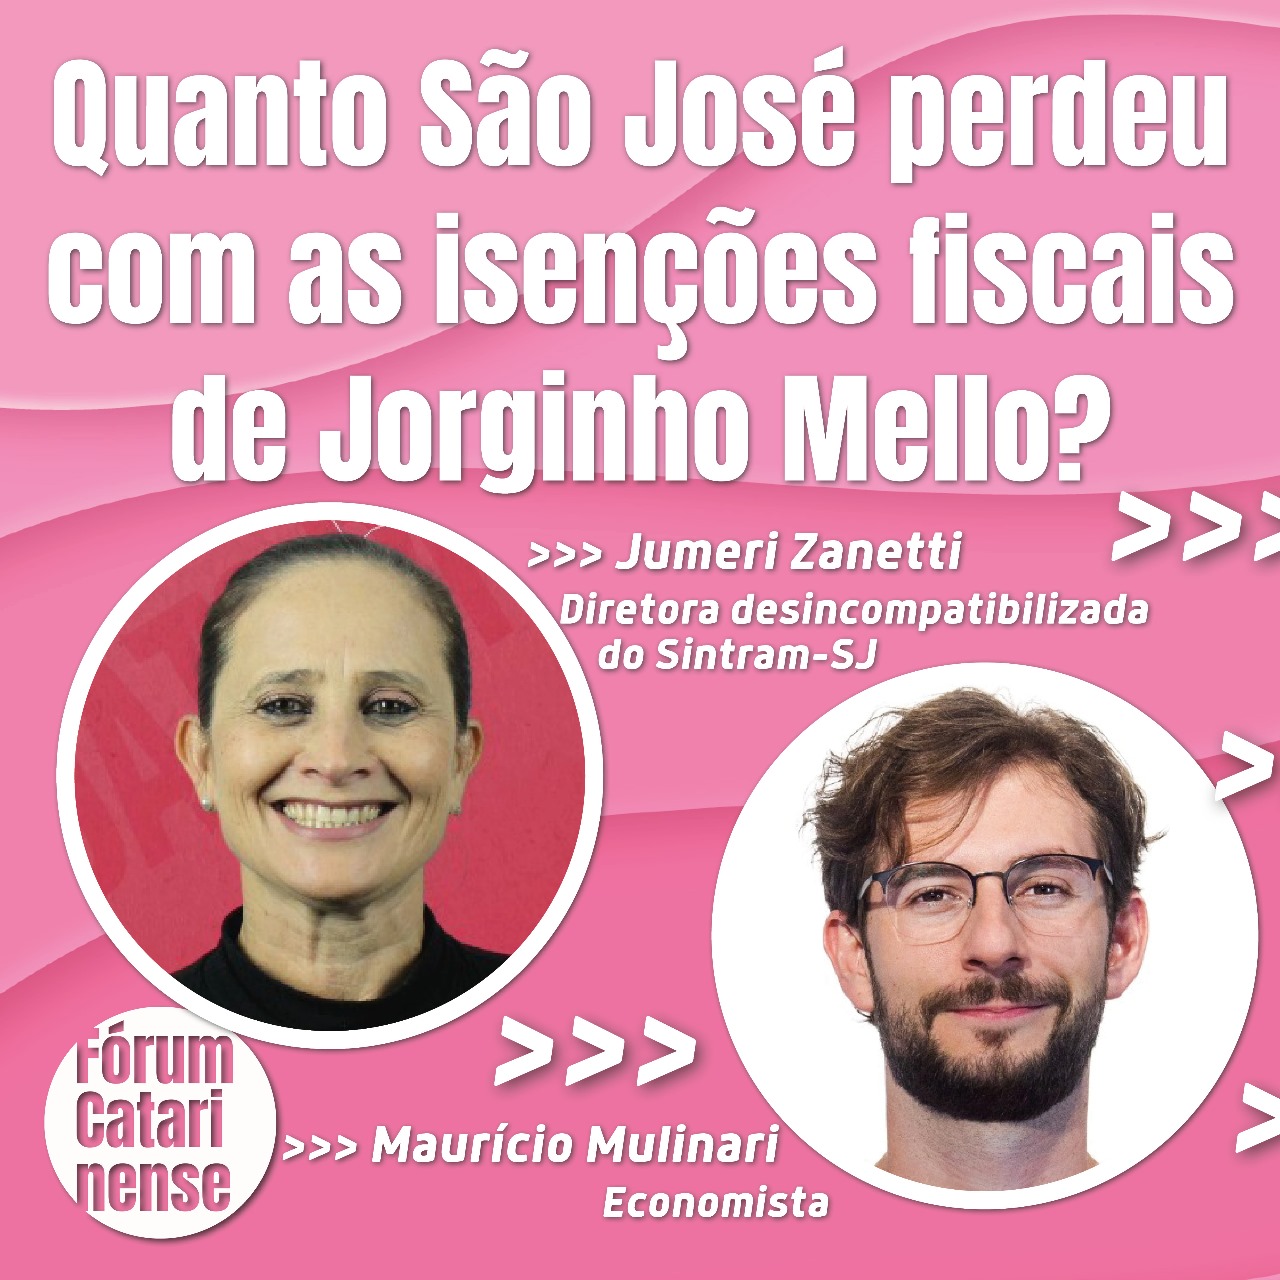 Fórum dos servidores promove debate sobre isenções fiscais de Jorginho Mello no município de São José